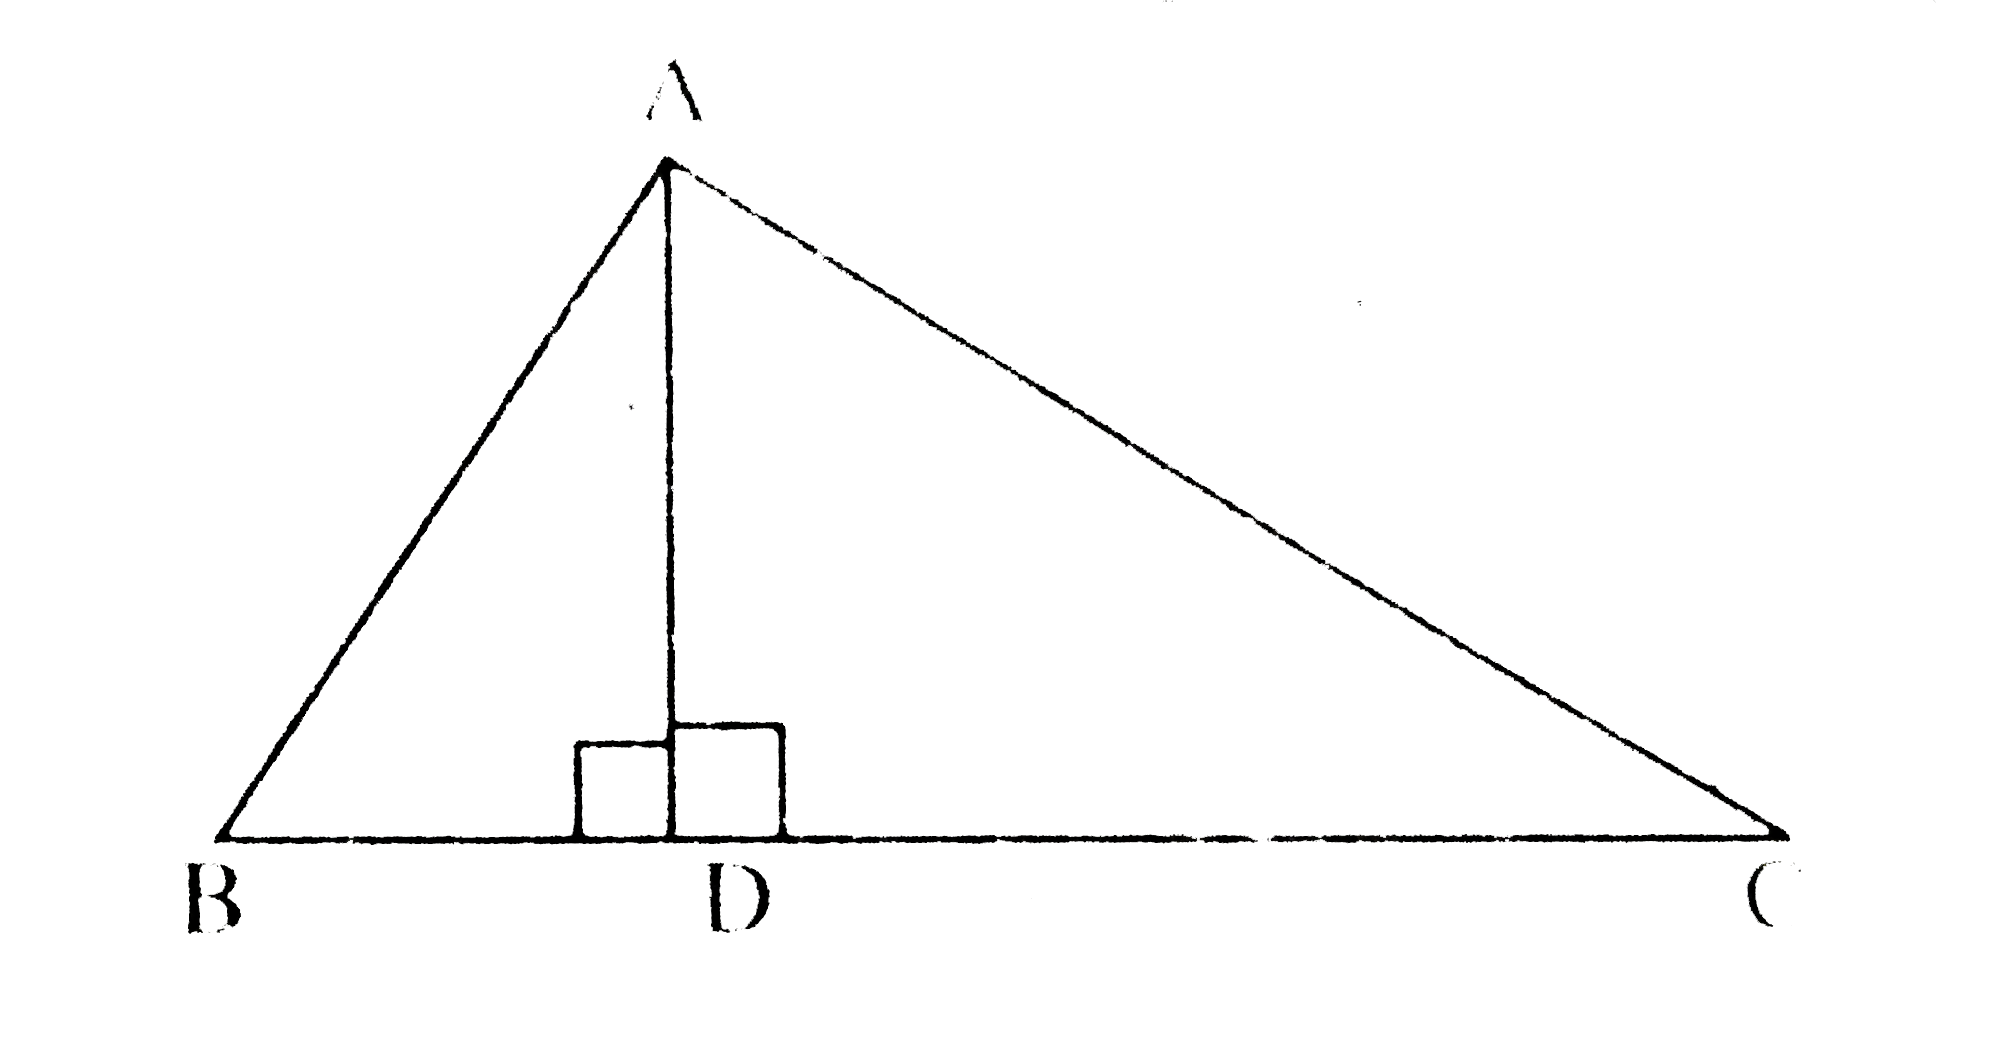 DeltaABC में यदि भुजा AD भुजा BC पर लम्ब है और AD^(2)=BDxxCD सिद्ध कीजिए कि DeltaABC एक समकोण त्रिभुज है।